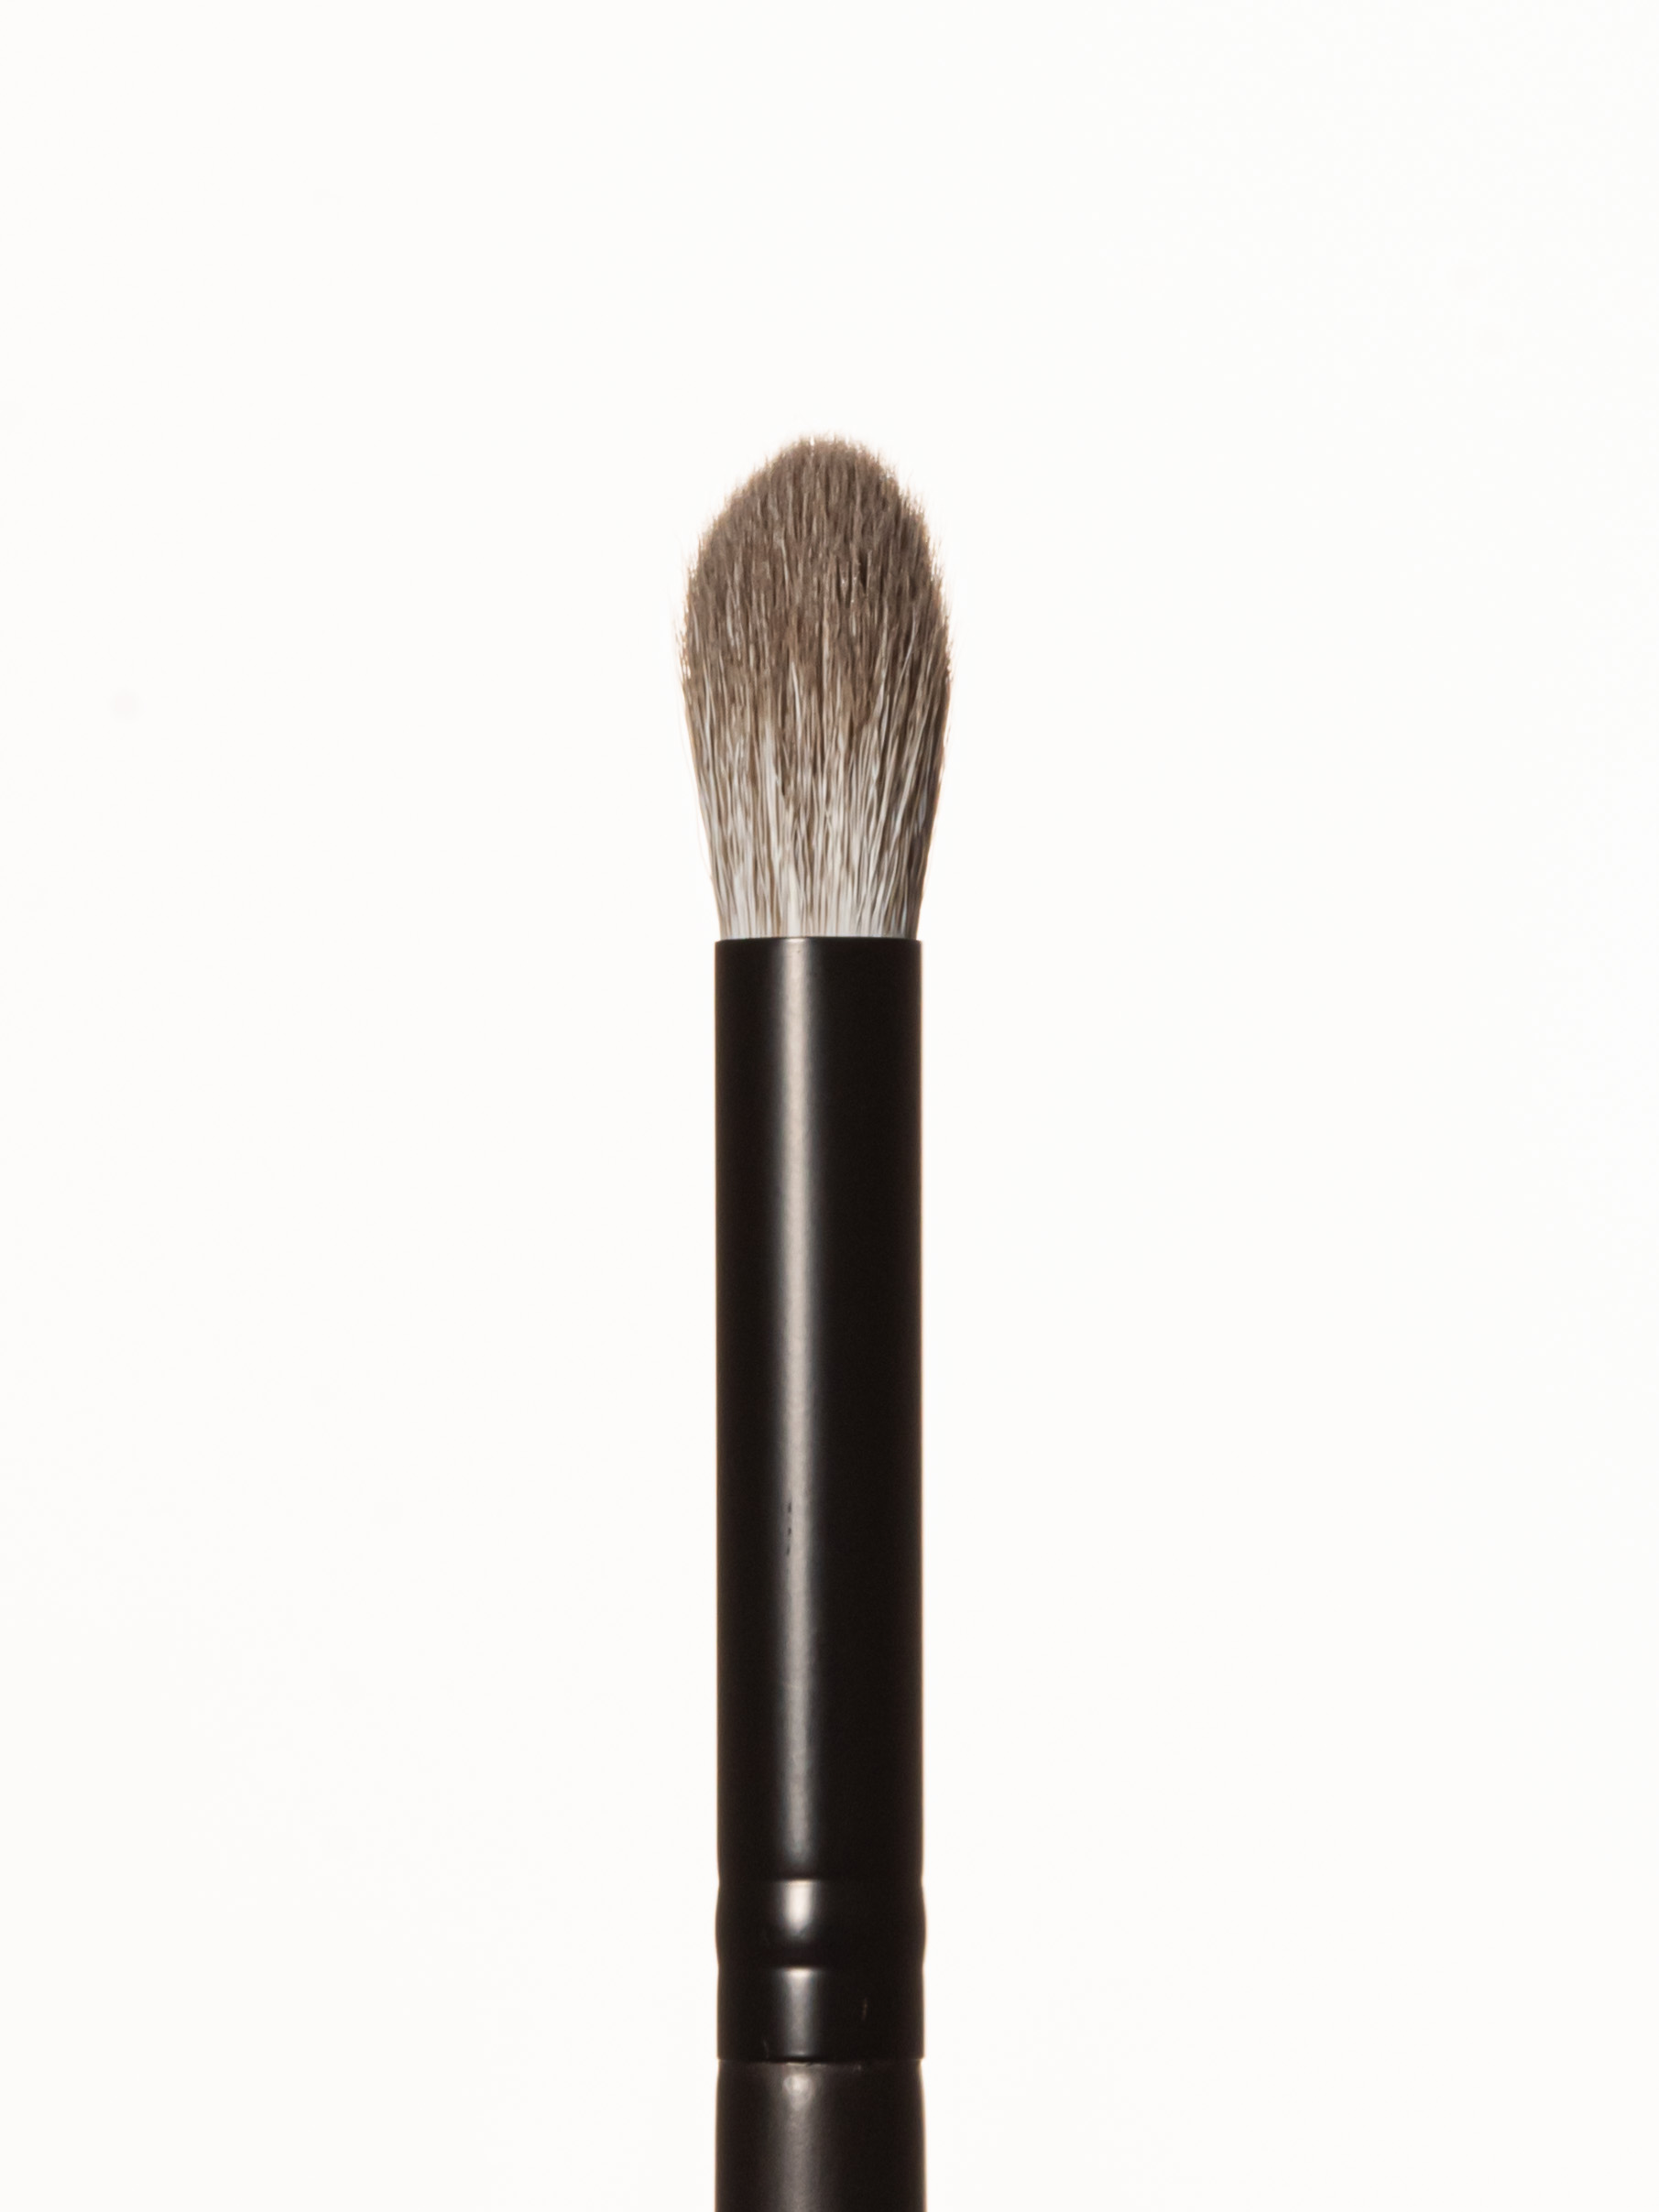 BEAUTYDRUGS Makeup Brush 20 Blending Brush   